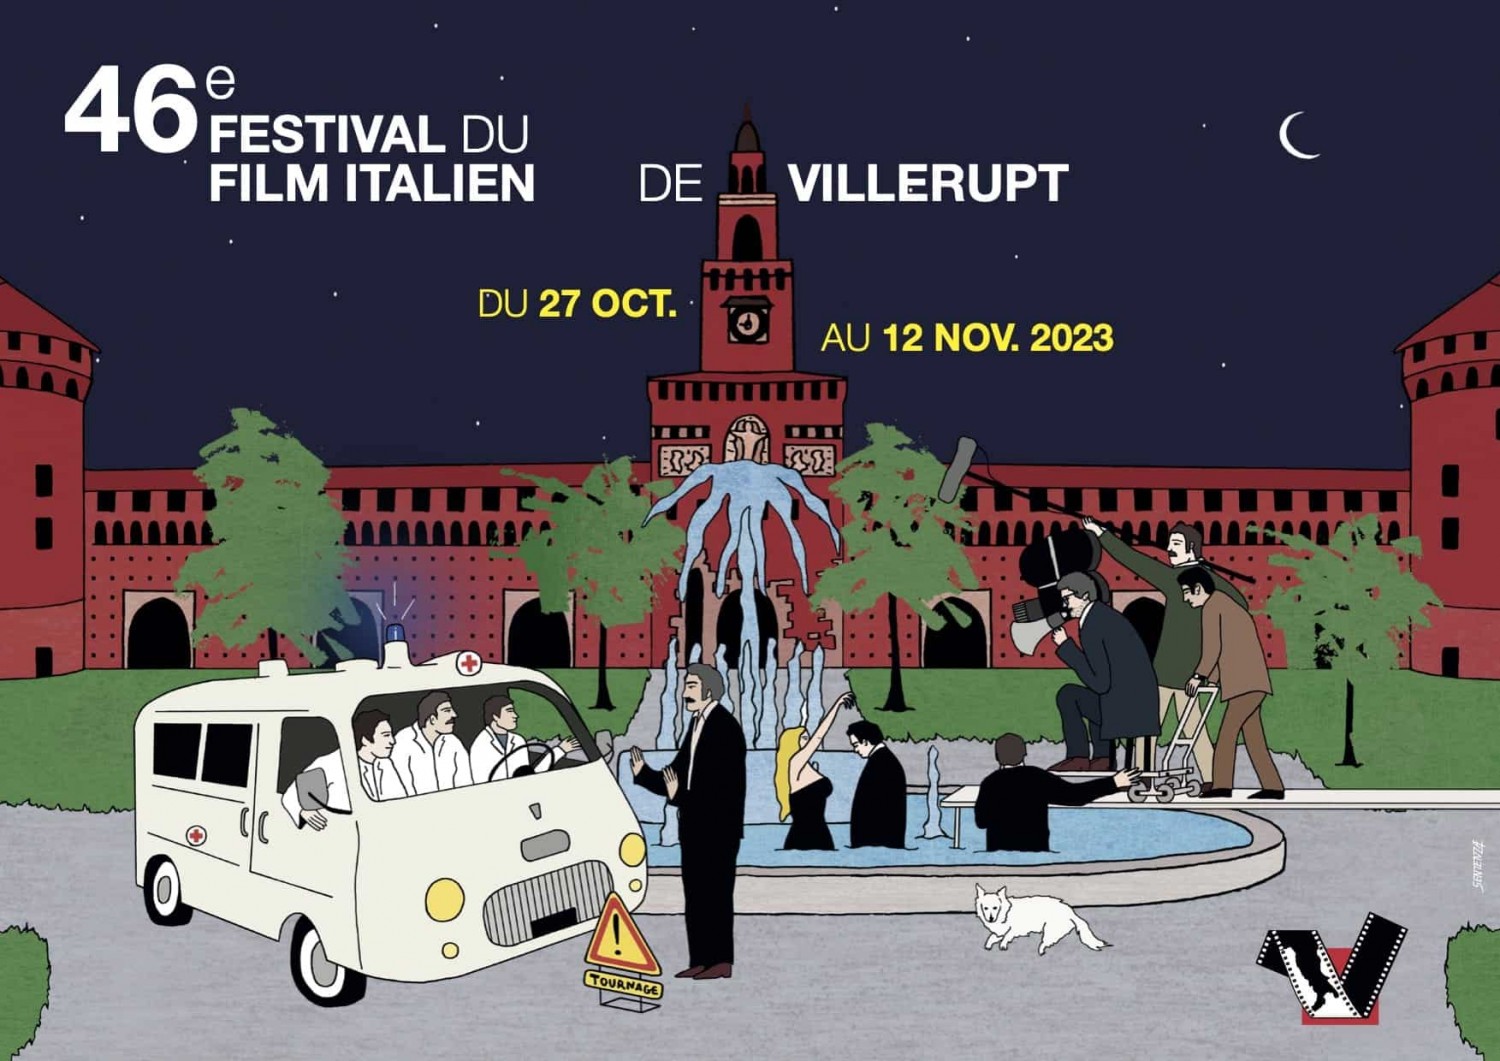 Décentralisation du Festival du film italien de Villerupt - Sarreguemines